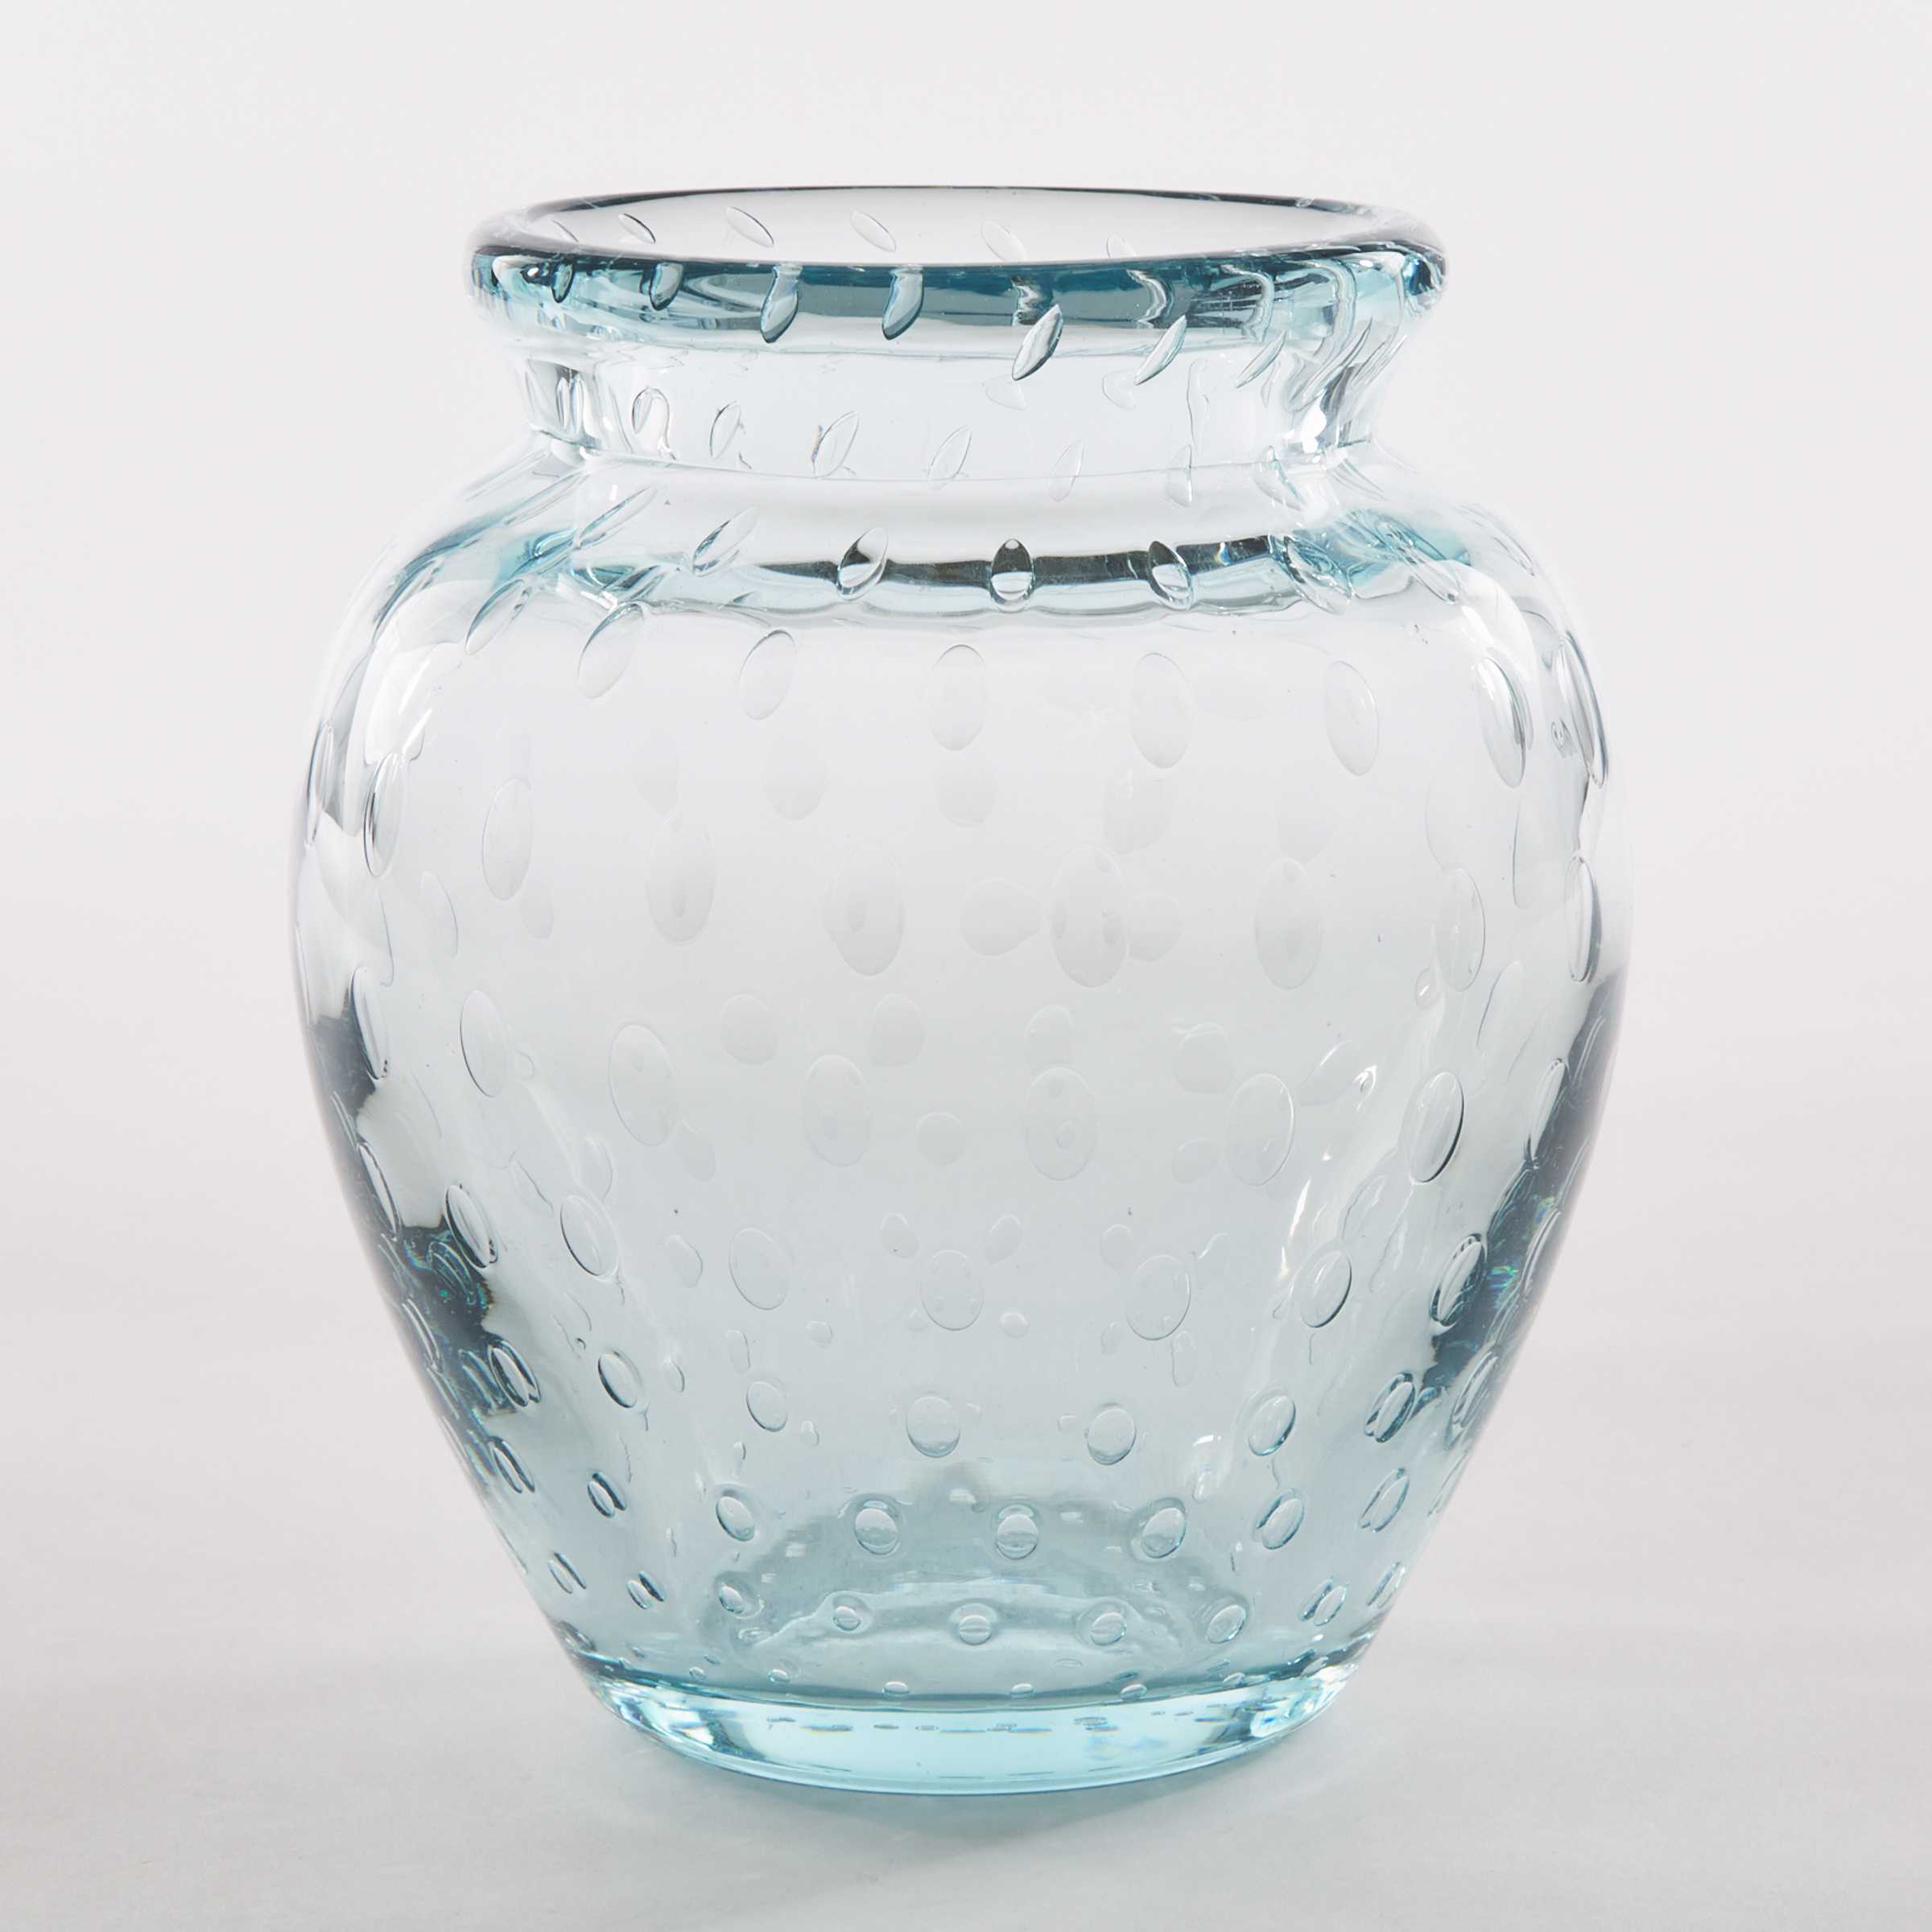 Daum Blue Glass Vase 20th century 2f26ef